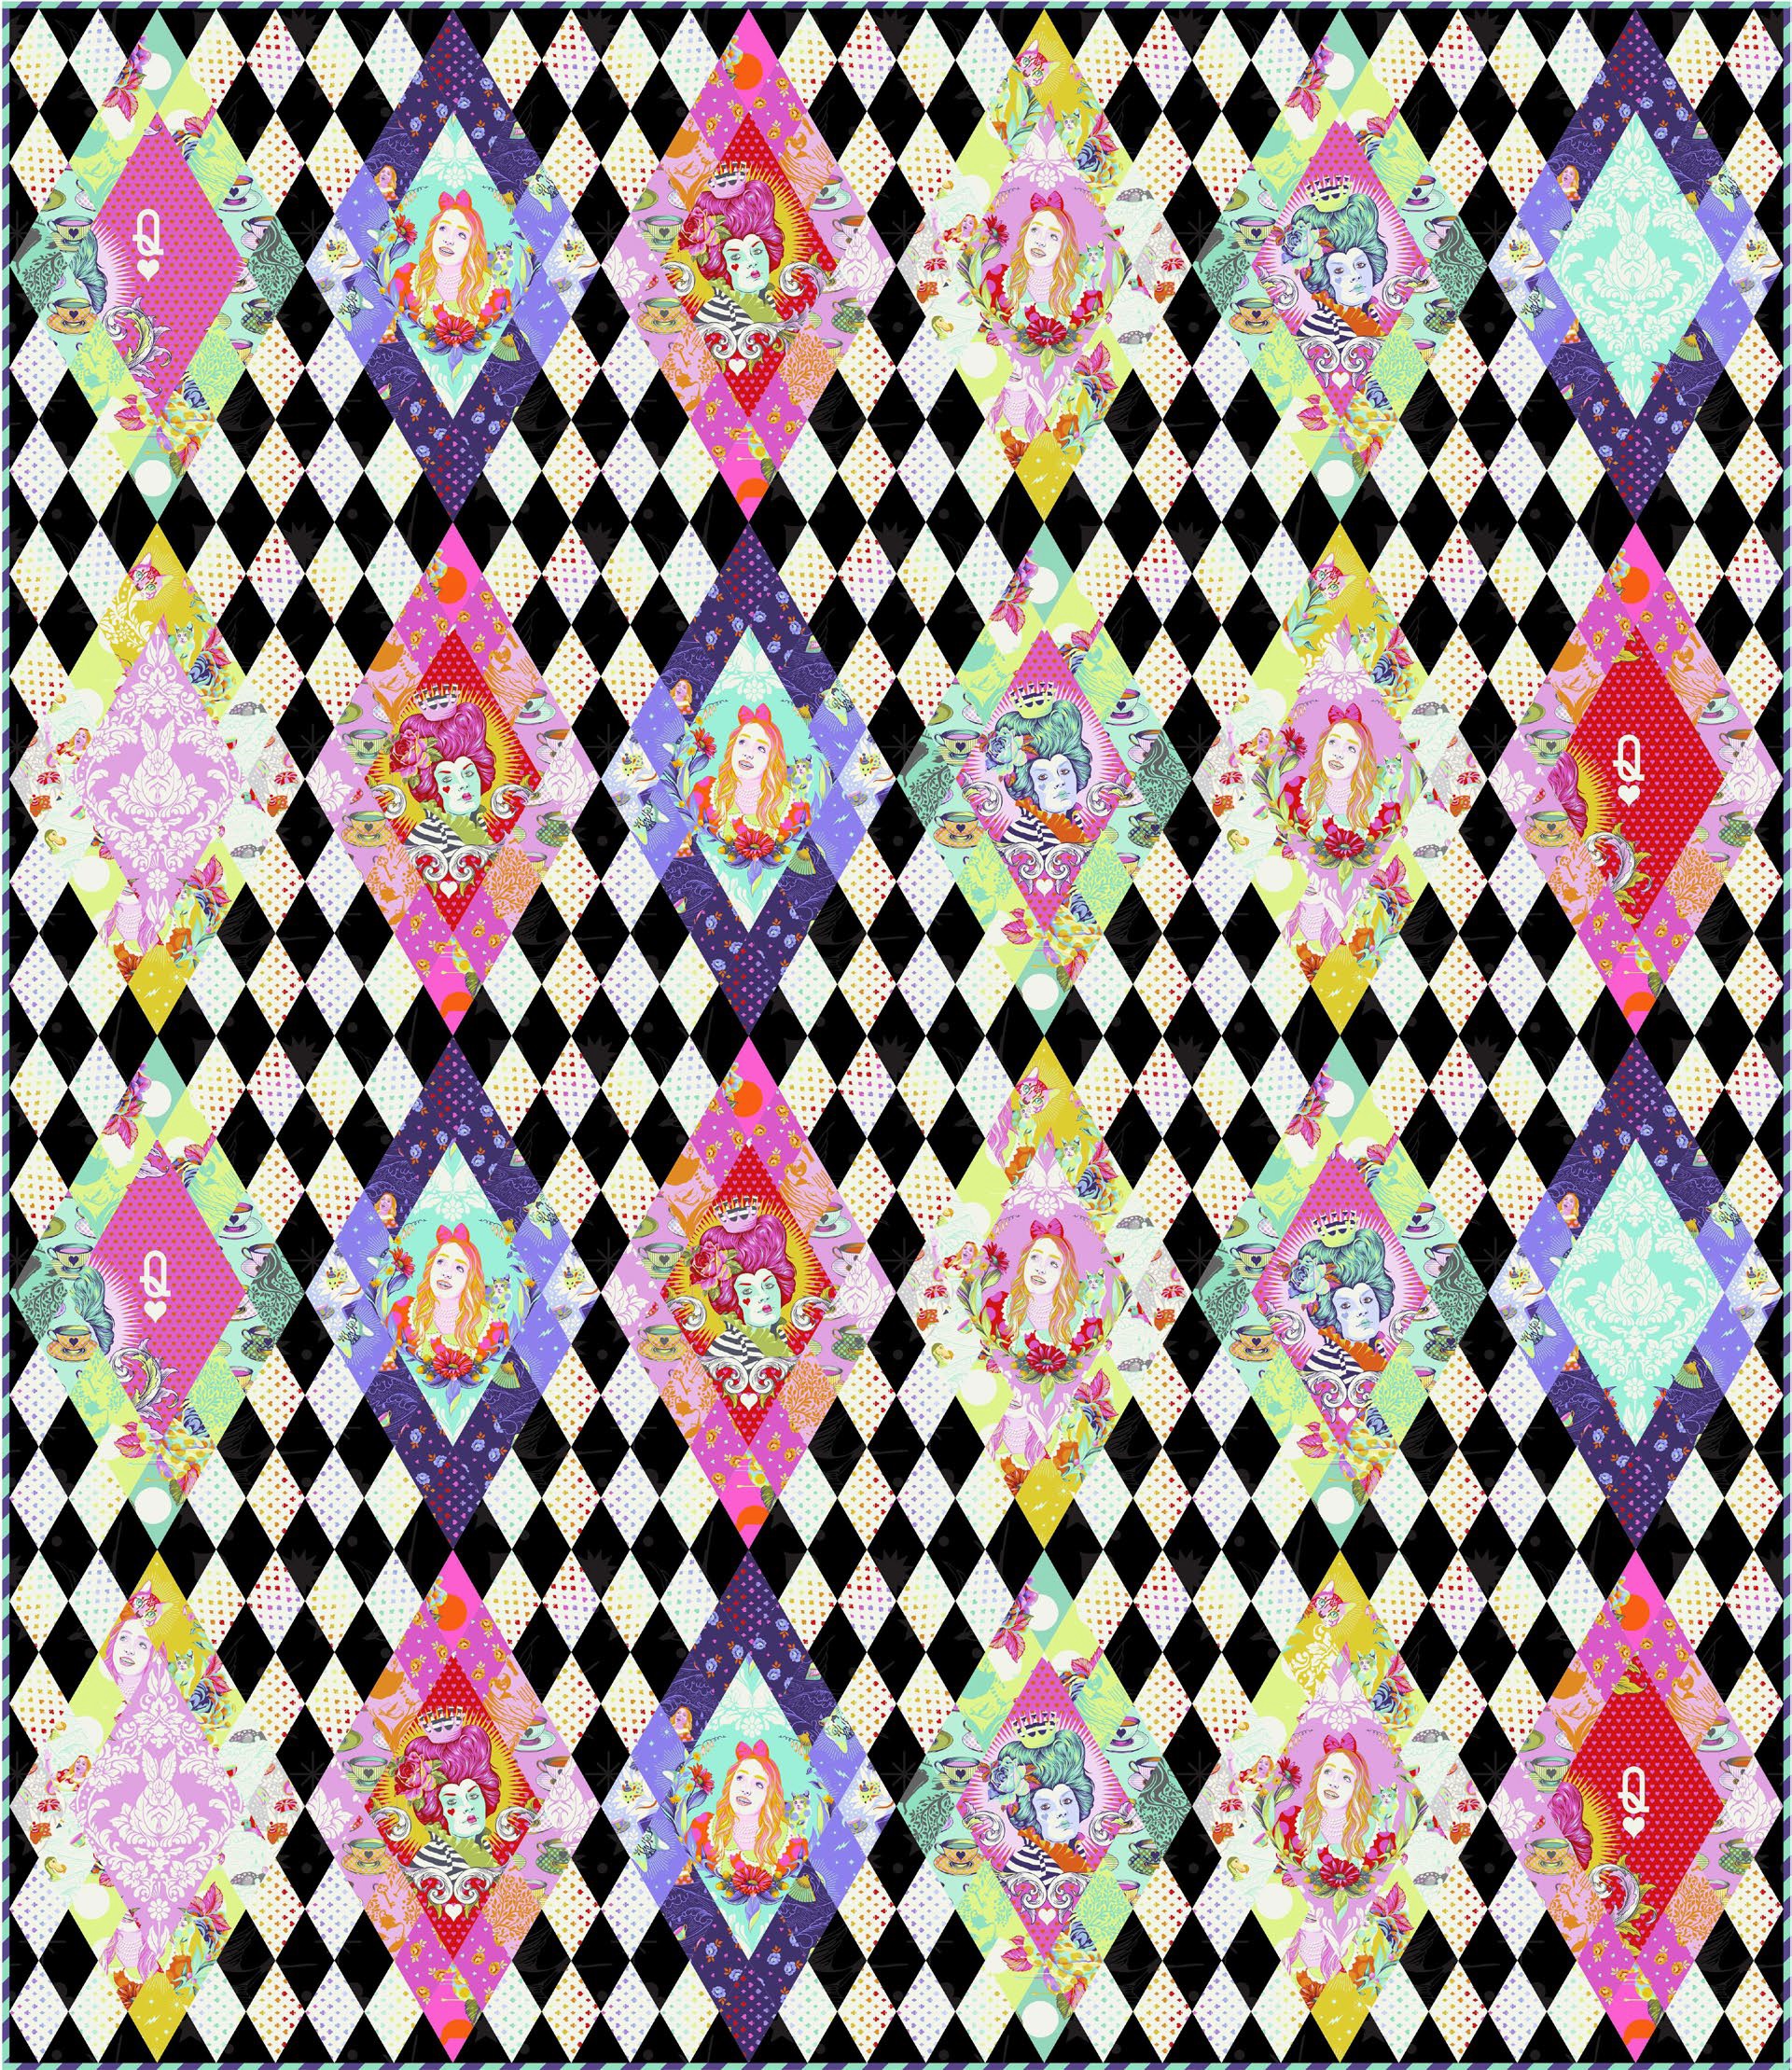 kolekce látek Curiouser & Curiouser návrhářka Tula Pink dětská metráž látky s motivy Alenka v říši divů prodej VierMa návod na quilt ke stažení zdarma 1